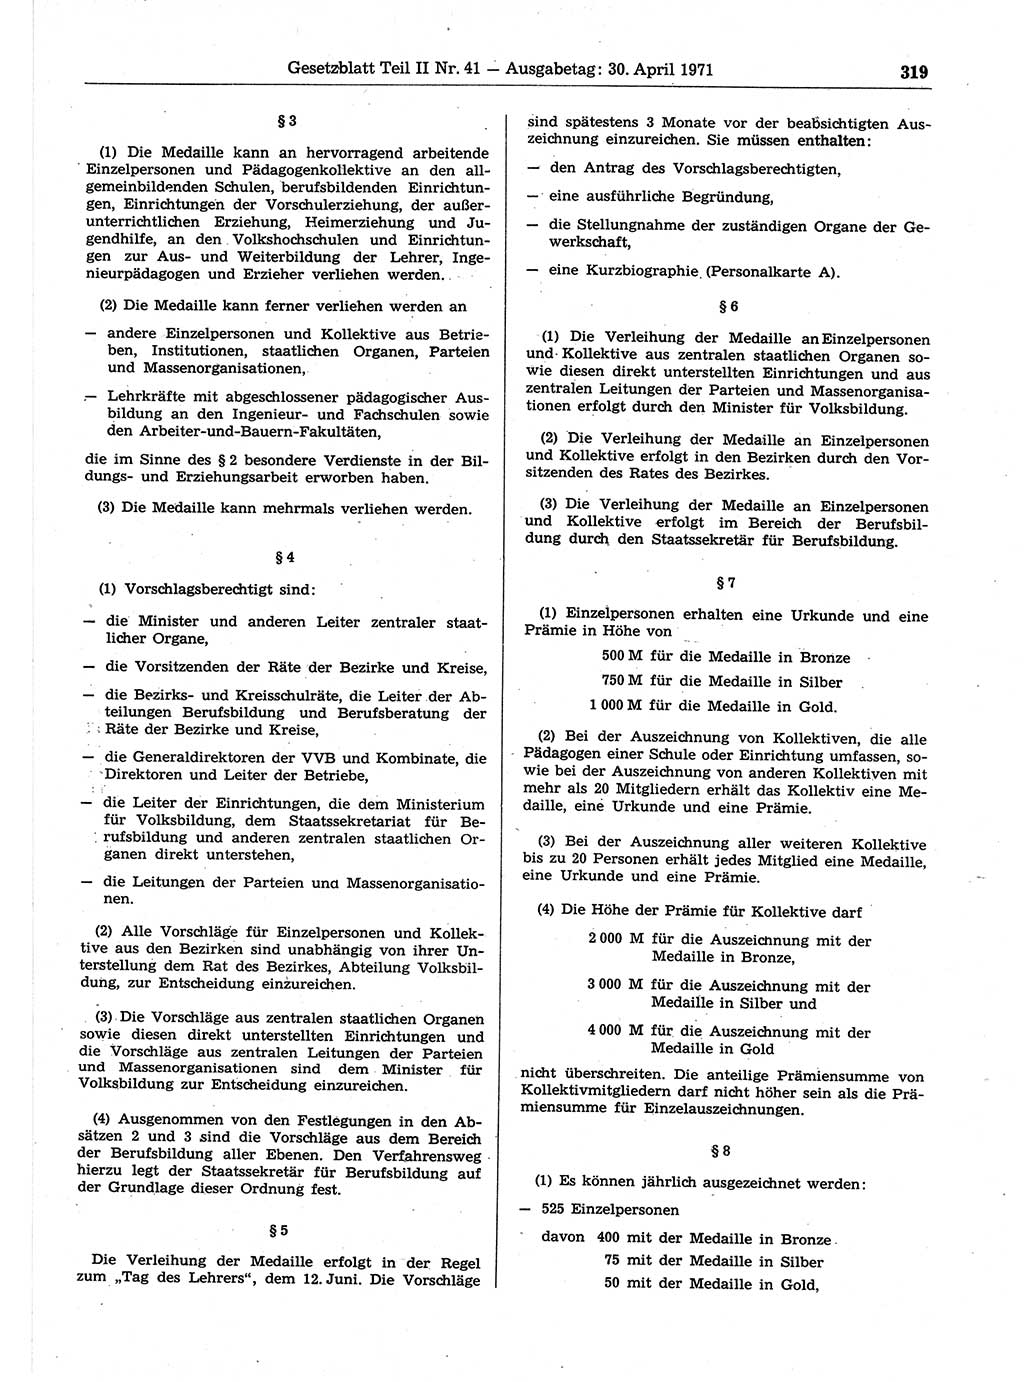 Gesetzblatt (GBl.) der Deutschen Demokratischen Republik (DDR) Teil ⅠⅠ 1971, Seite 319 (GBl. DDR ⅠⅠ 1971, S. 319)